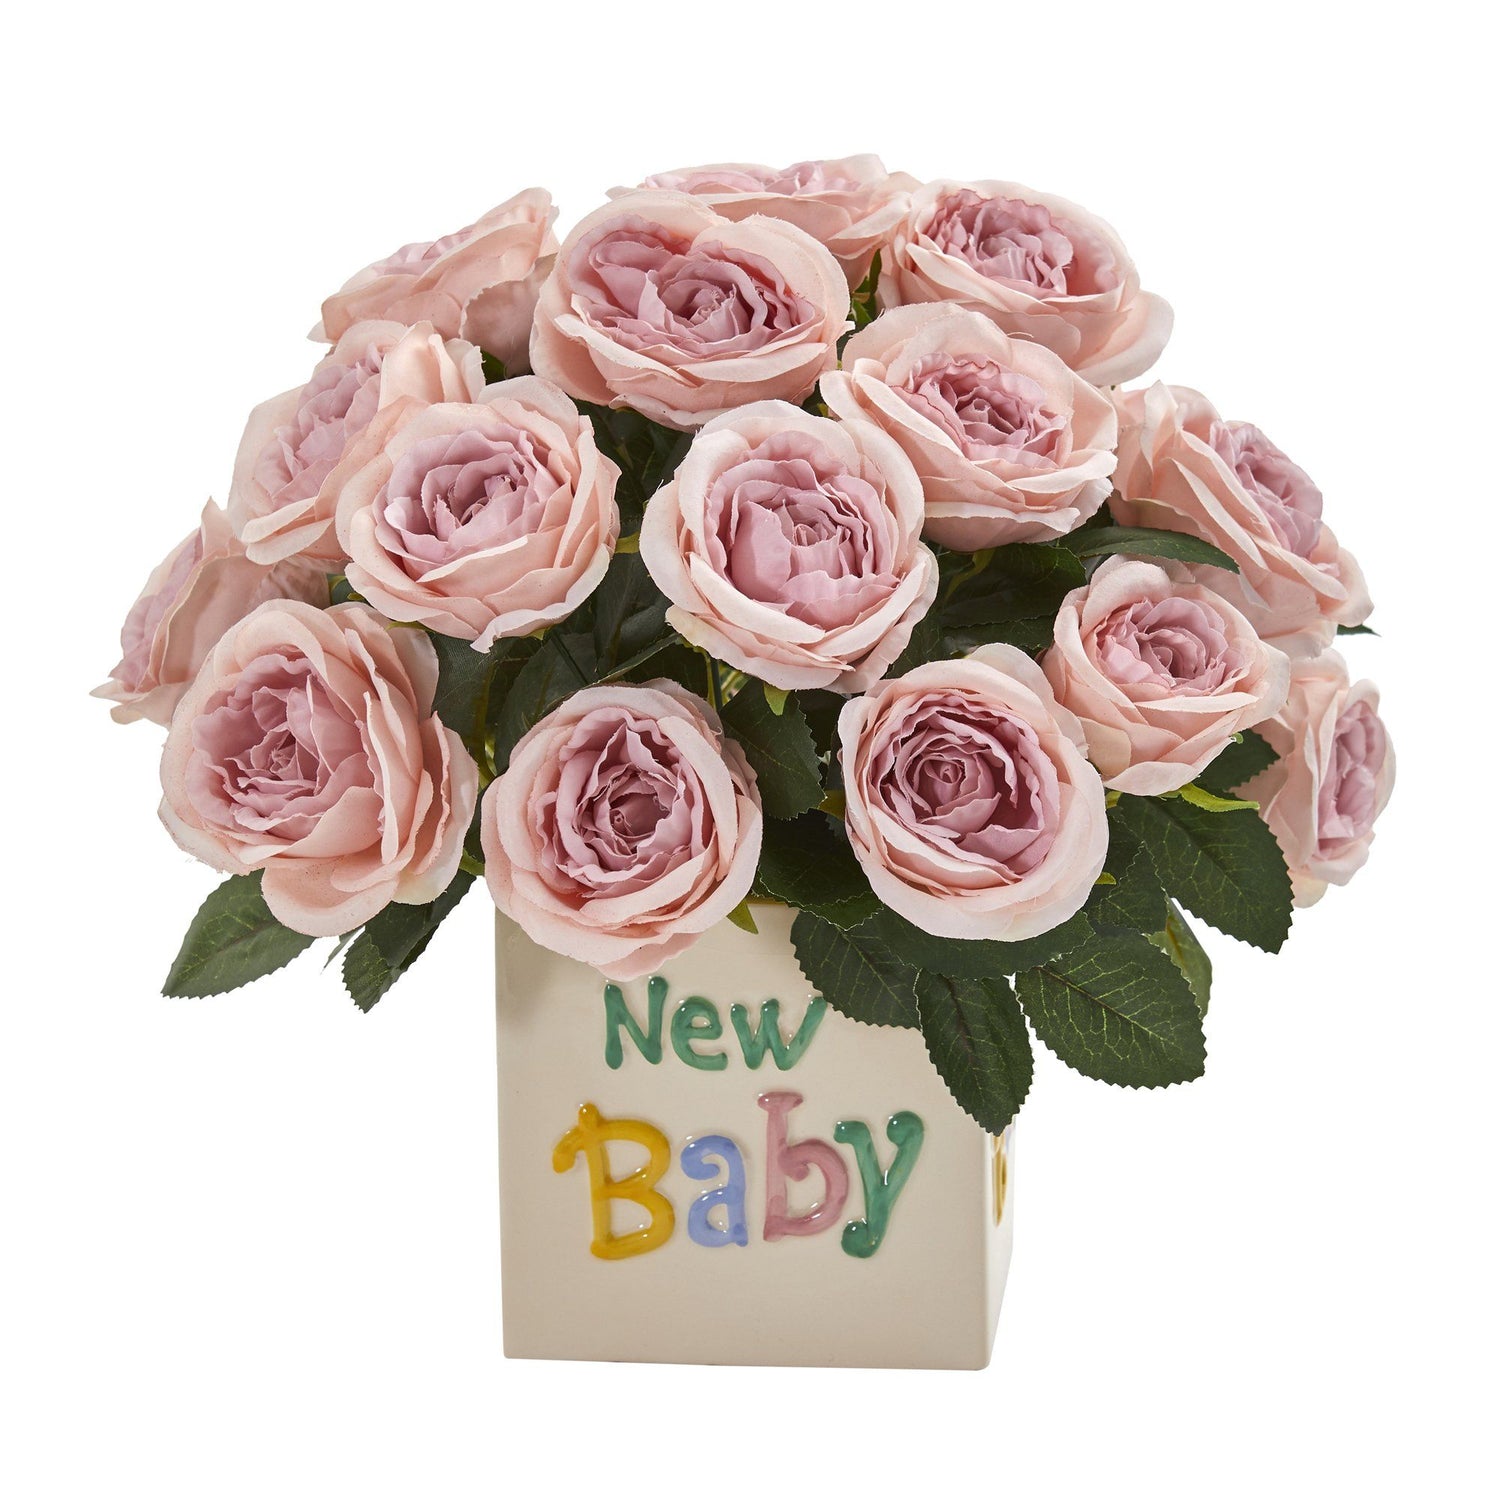 12” Rose Artificial Arrangement “New Baby” Vase